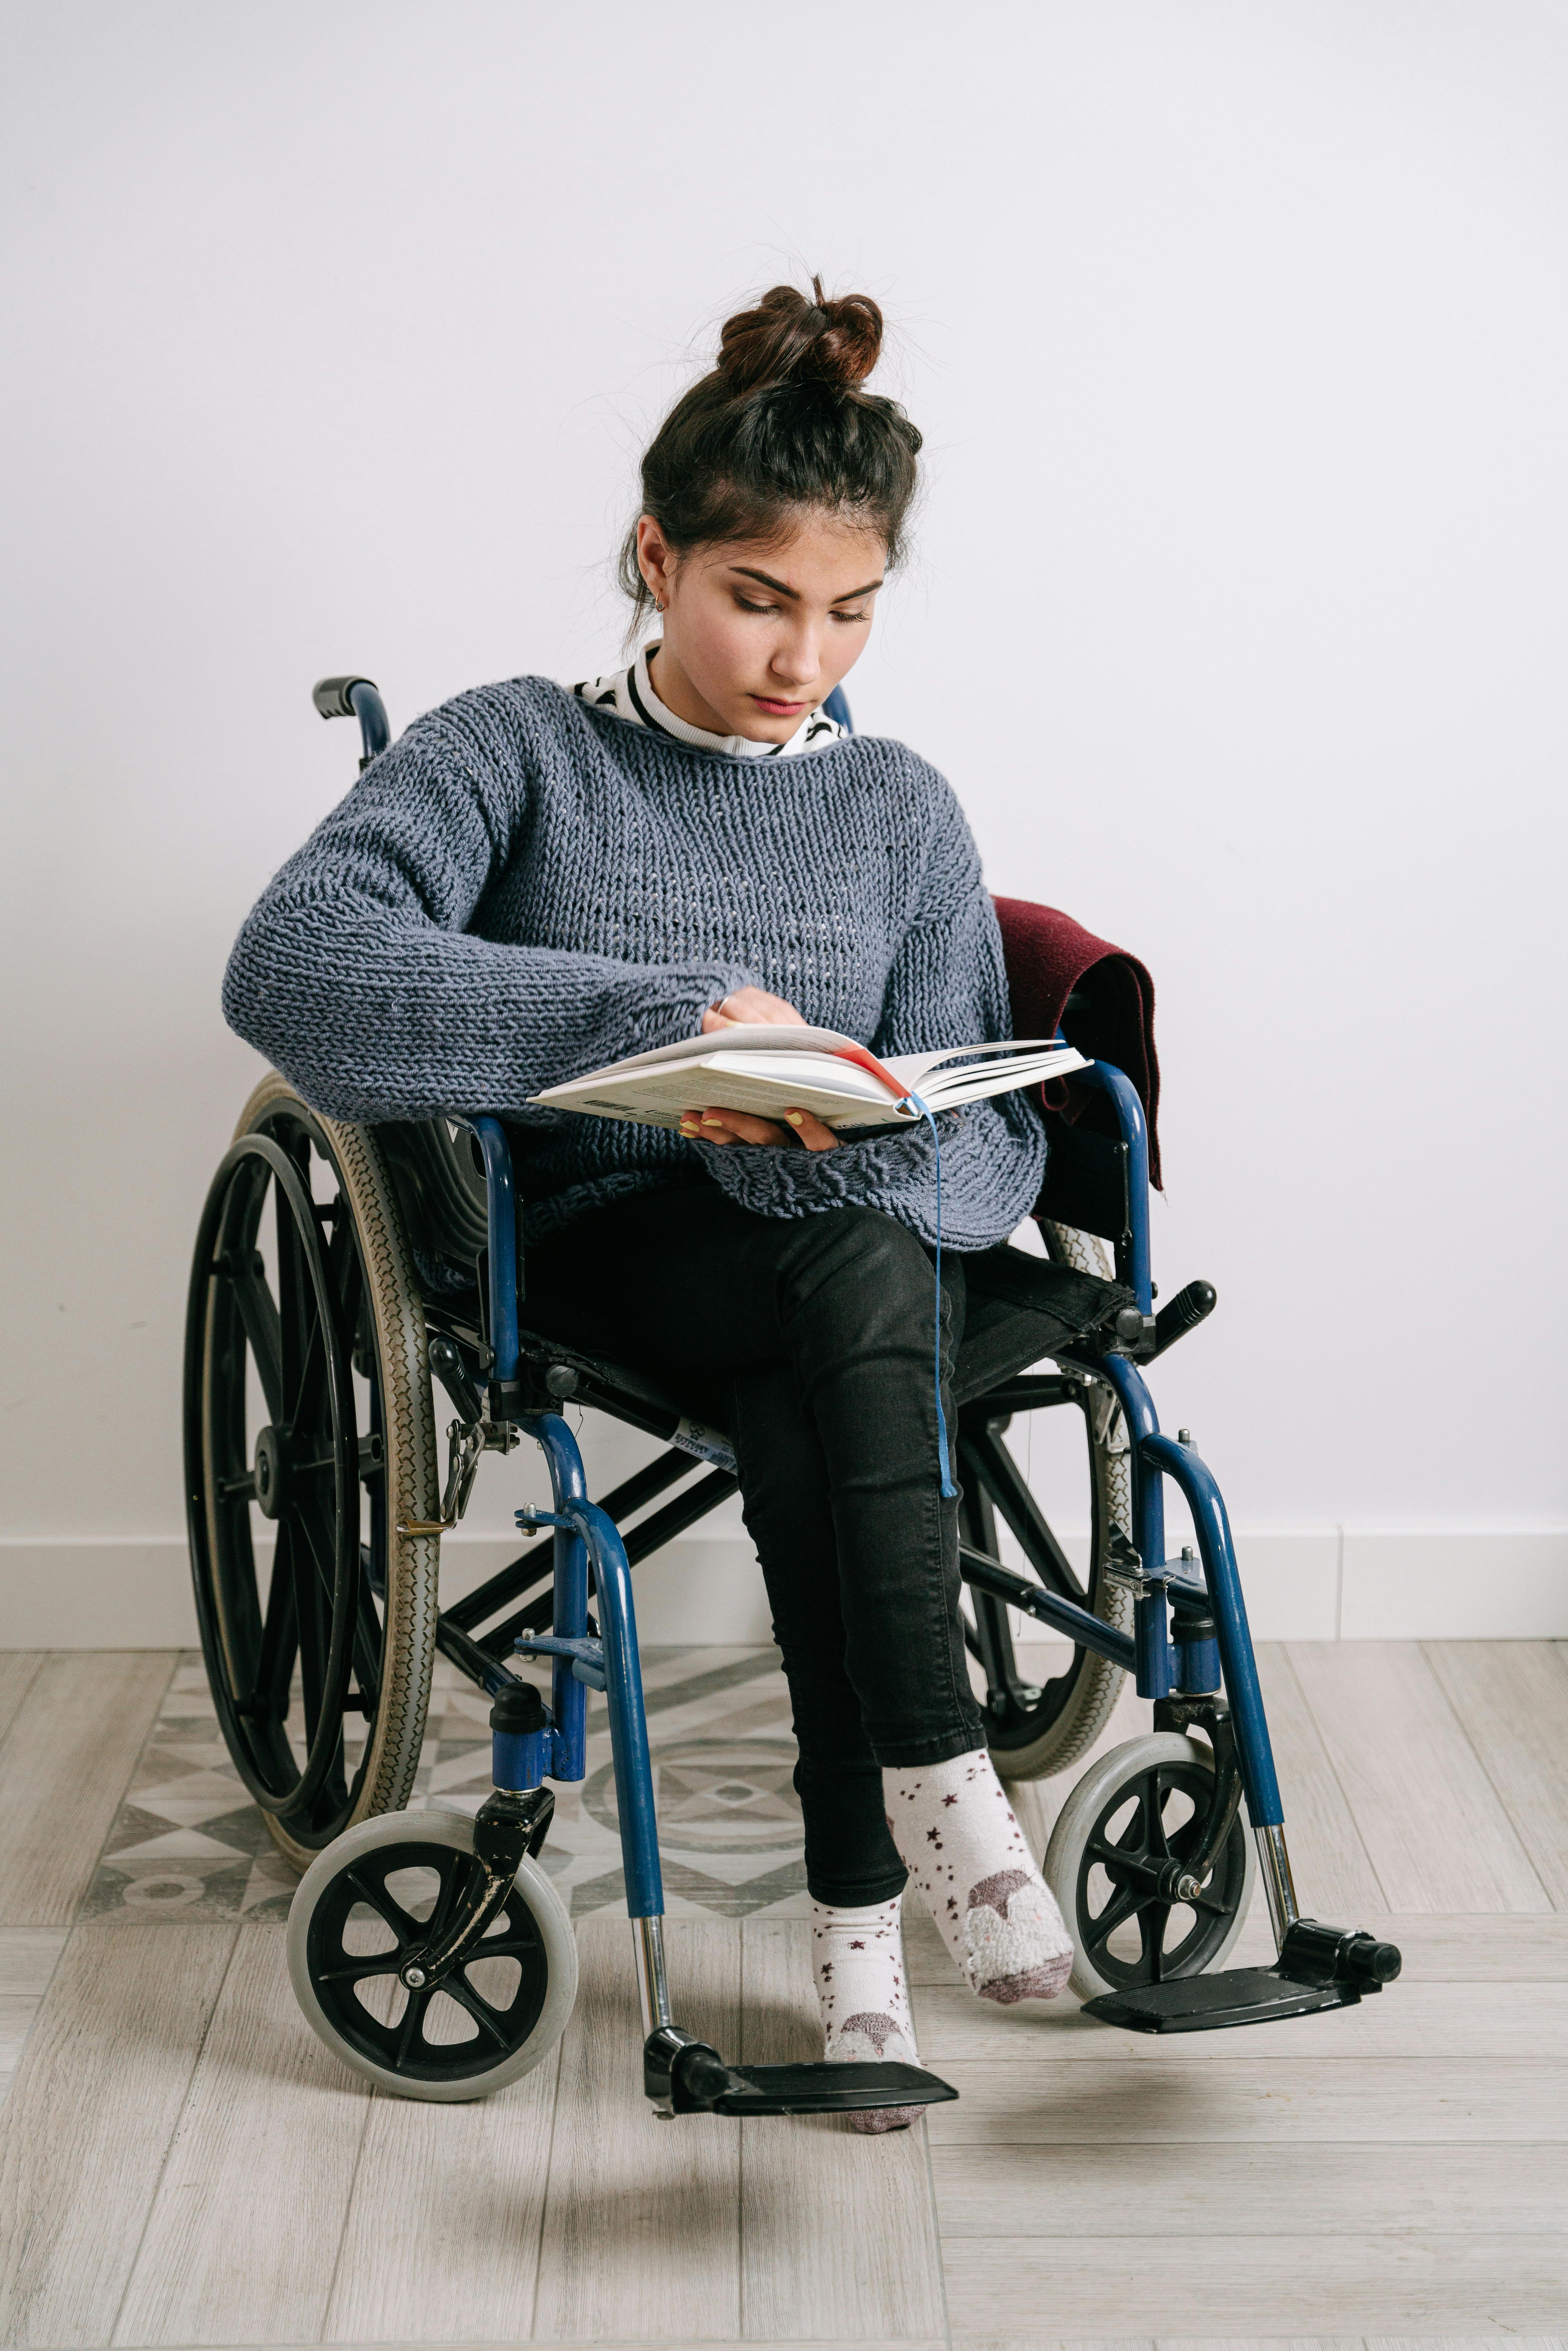 Una joven en silla de ruedas leyendo. | Imagen con fines ilustrativos | Fuente: Pexels